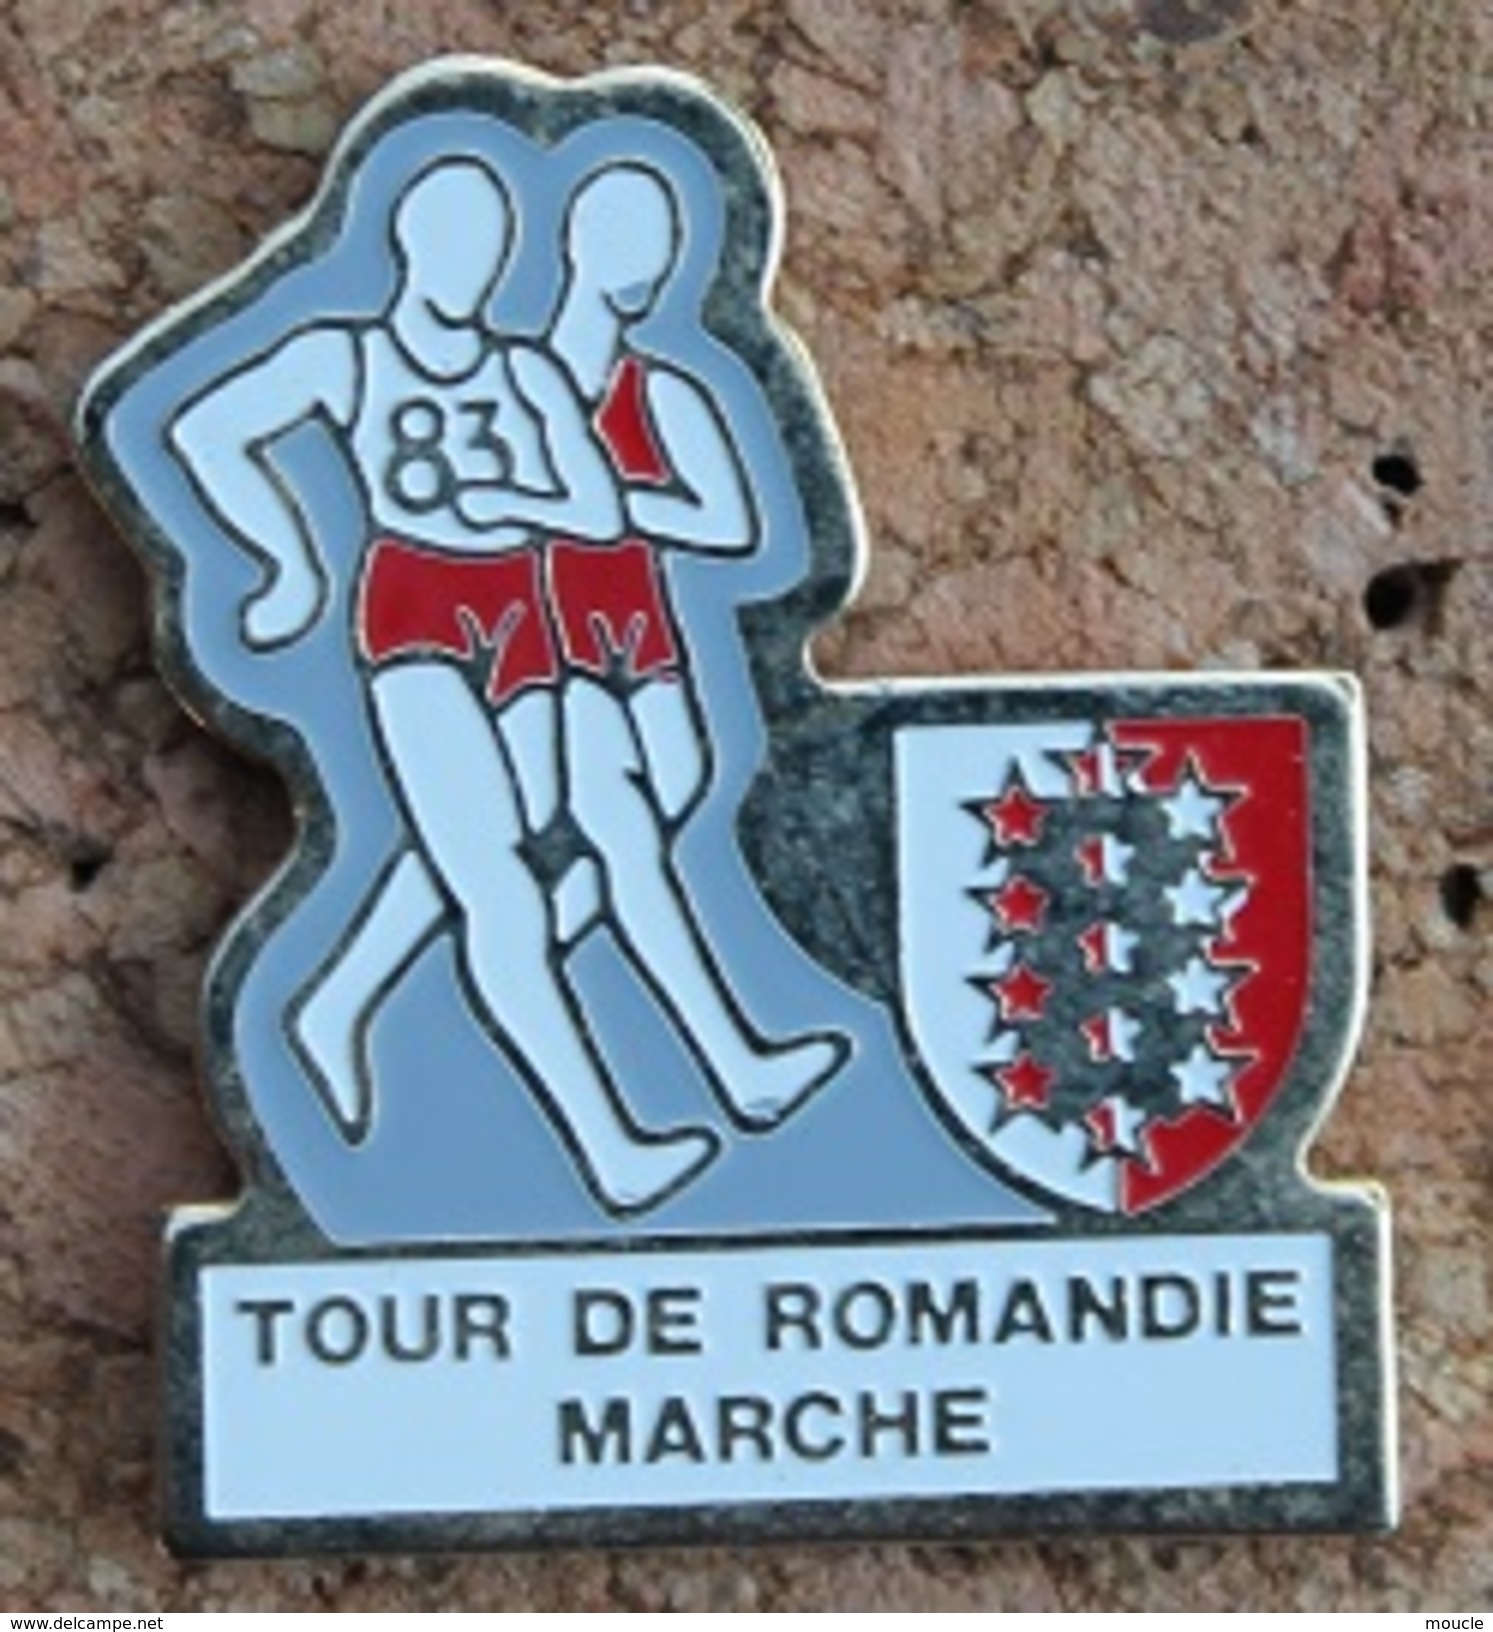 TOUR DE ROMANDIE A LA MARCHE - SUISSE - ETAPE DU CANTON DU VALAIS - MARCHEURS - SCHWEIZ - SVIZZERA - SUIZA  -     (13) - Athlétisme